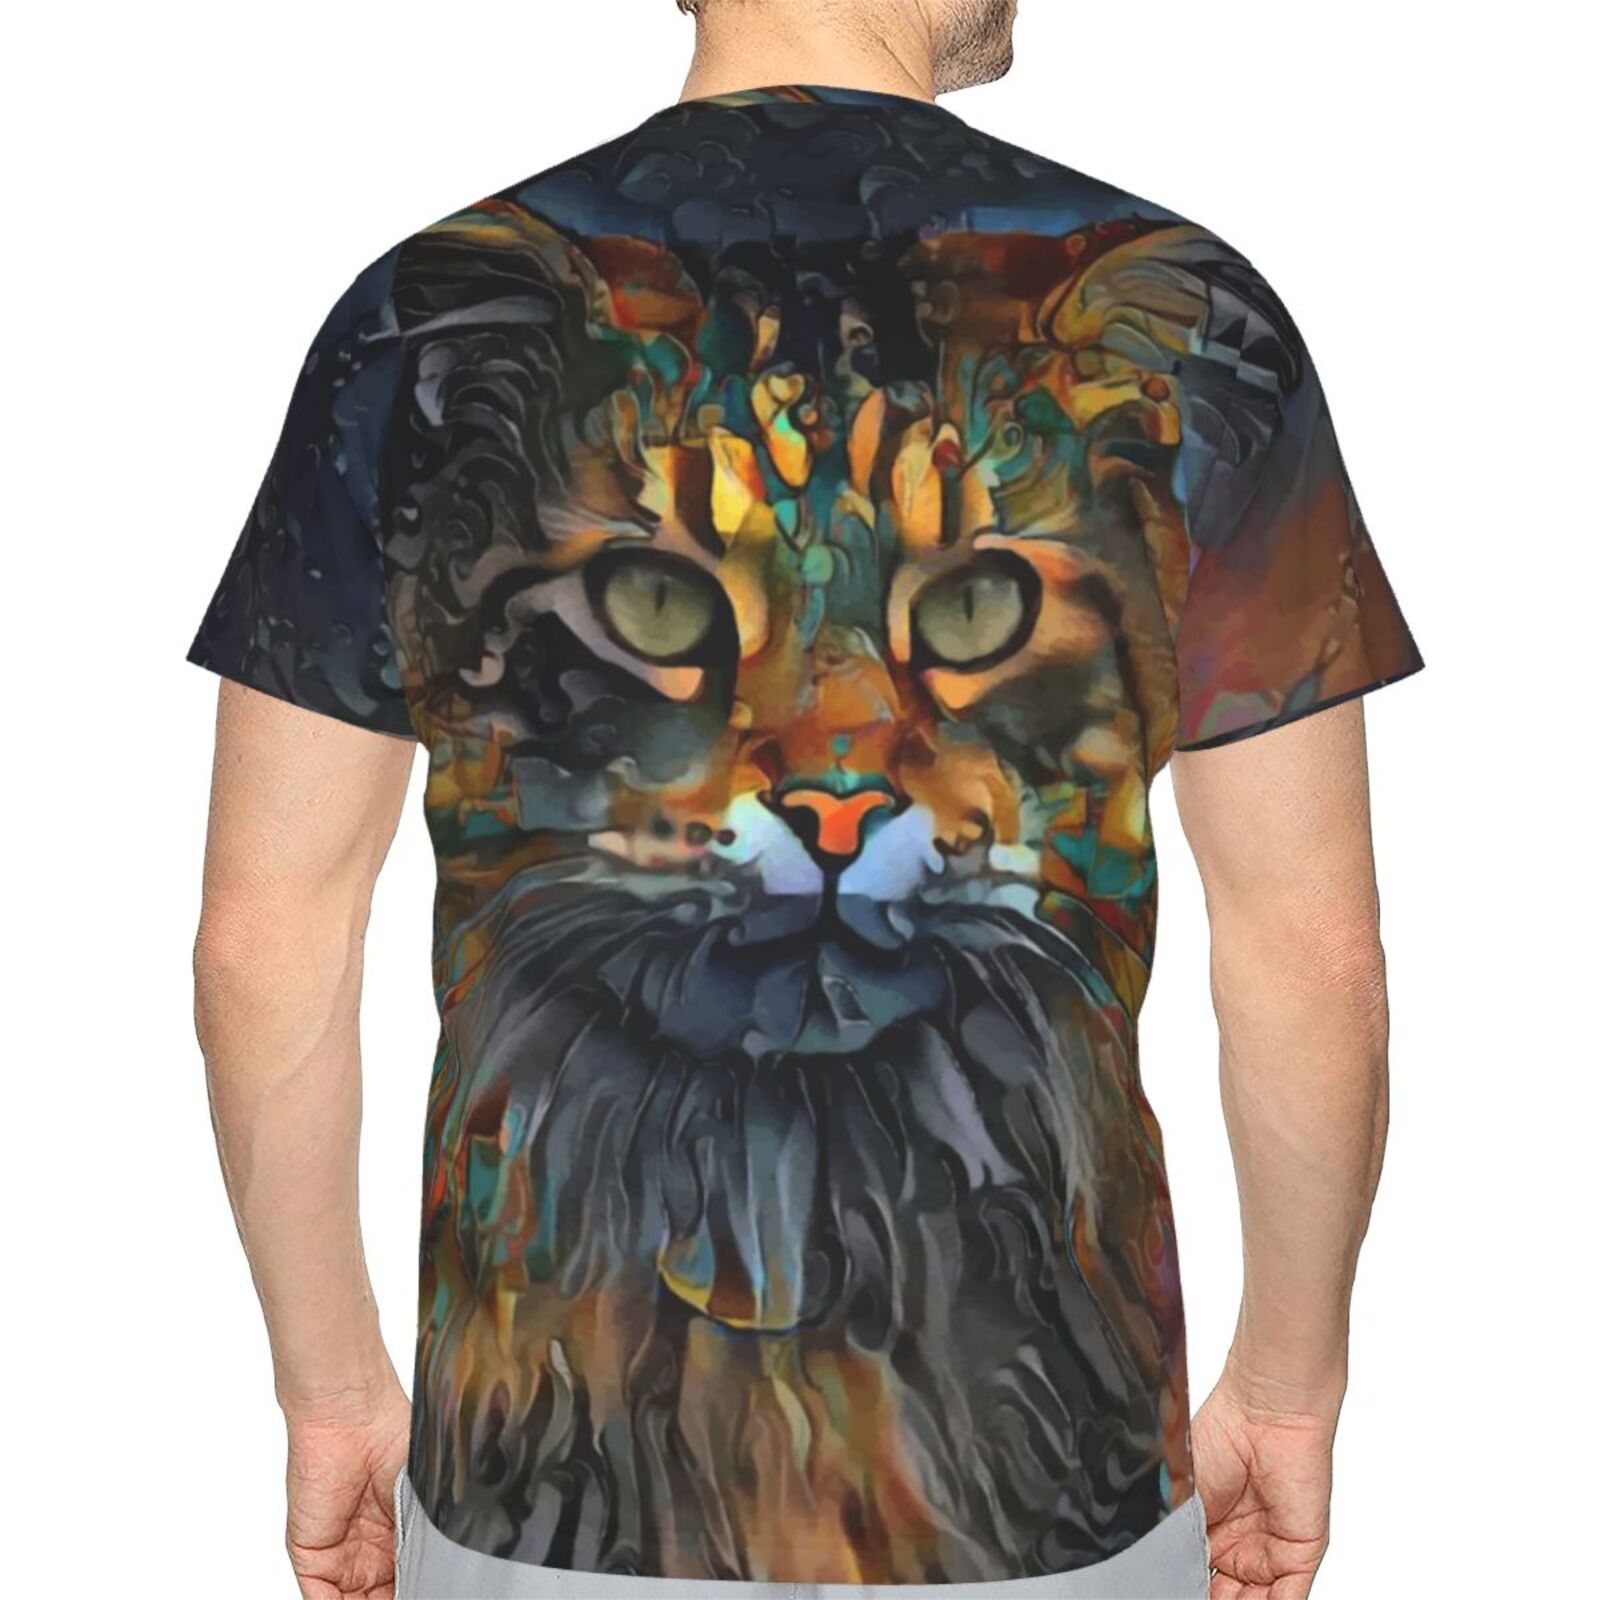 Samson Jr. Cat Mix Mdeia Elements Classic T-shirt